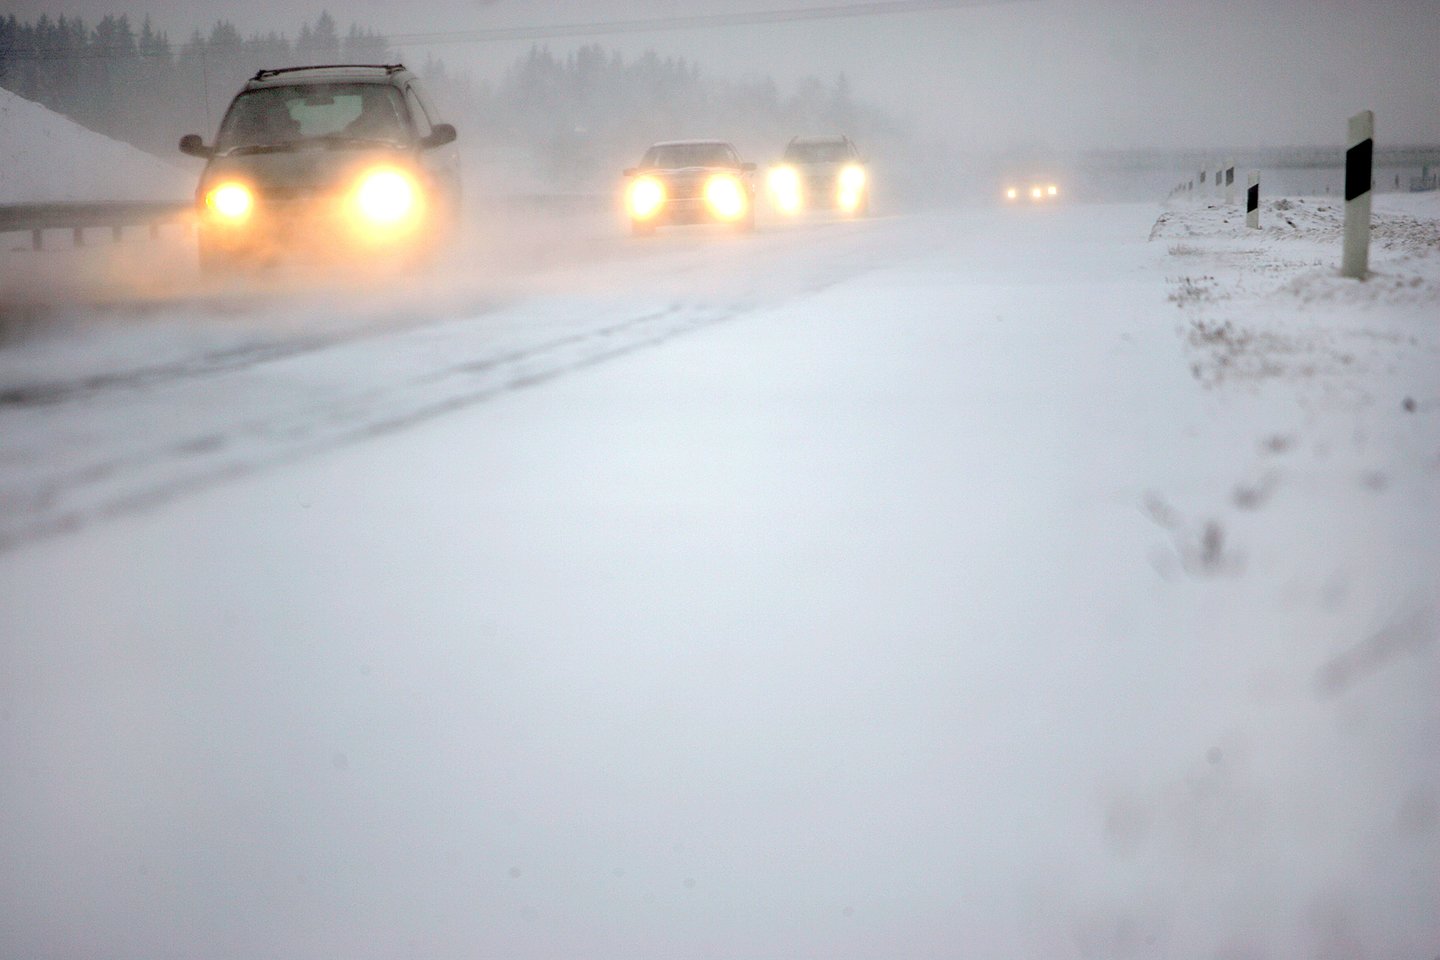 Pasak bendrovės „Kelių priežiūra“ atstovės, Lietuvoje šią žiemą keliuose dar nebuvo ekstremalių situacijų. O rangovai kviečiami tik joms užgriuvus.<br> V.Balkūno nuotr.